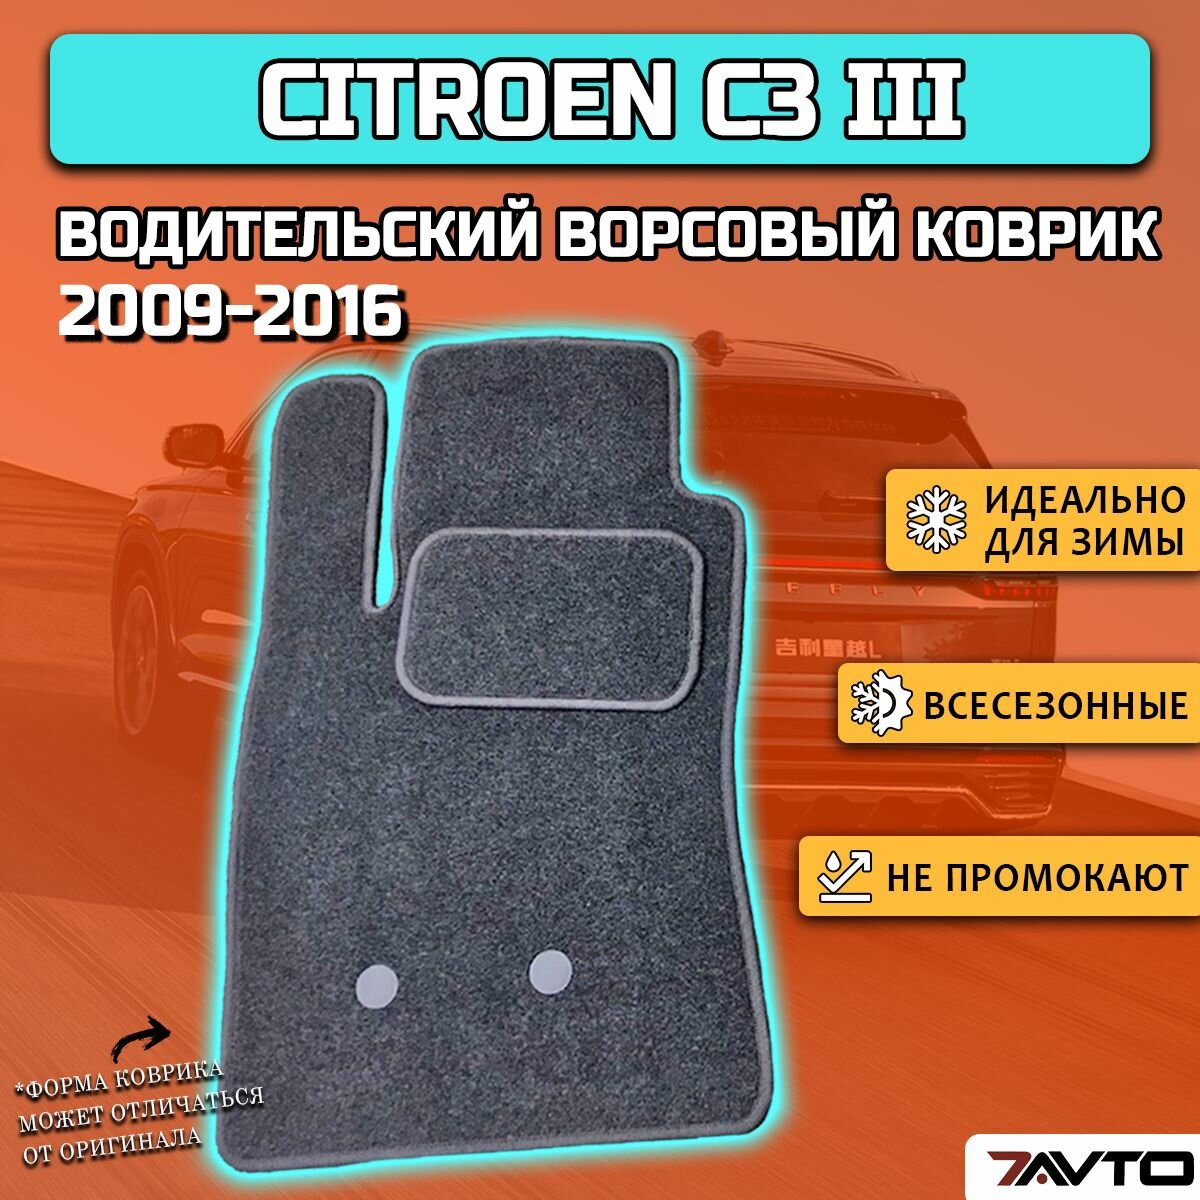 Водительский ворсовый коврик ECO на Citroen C3 III 2016-2020 / Ситроен Ц3